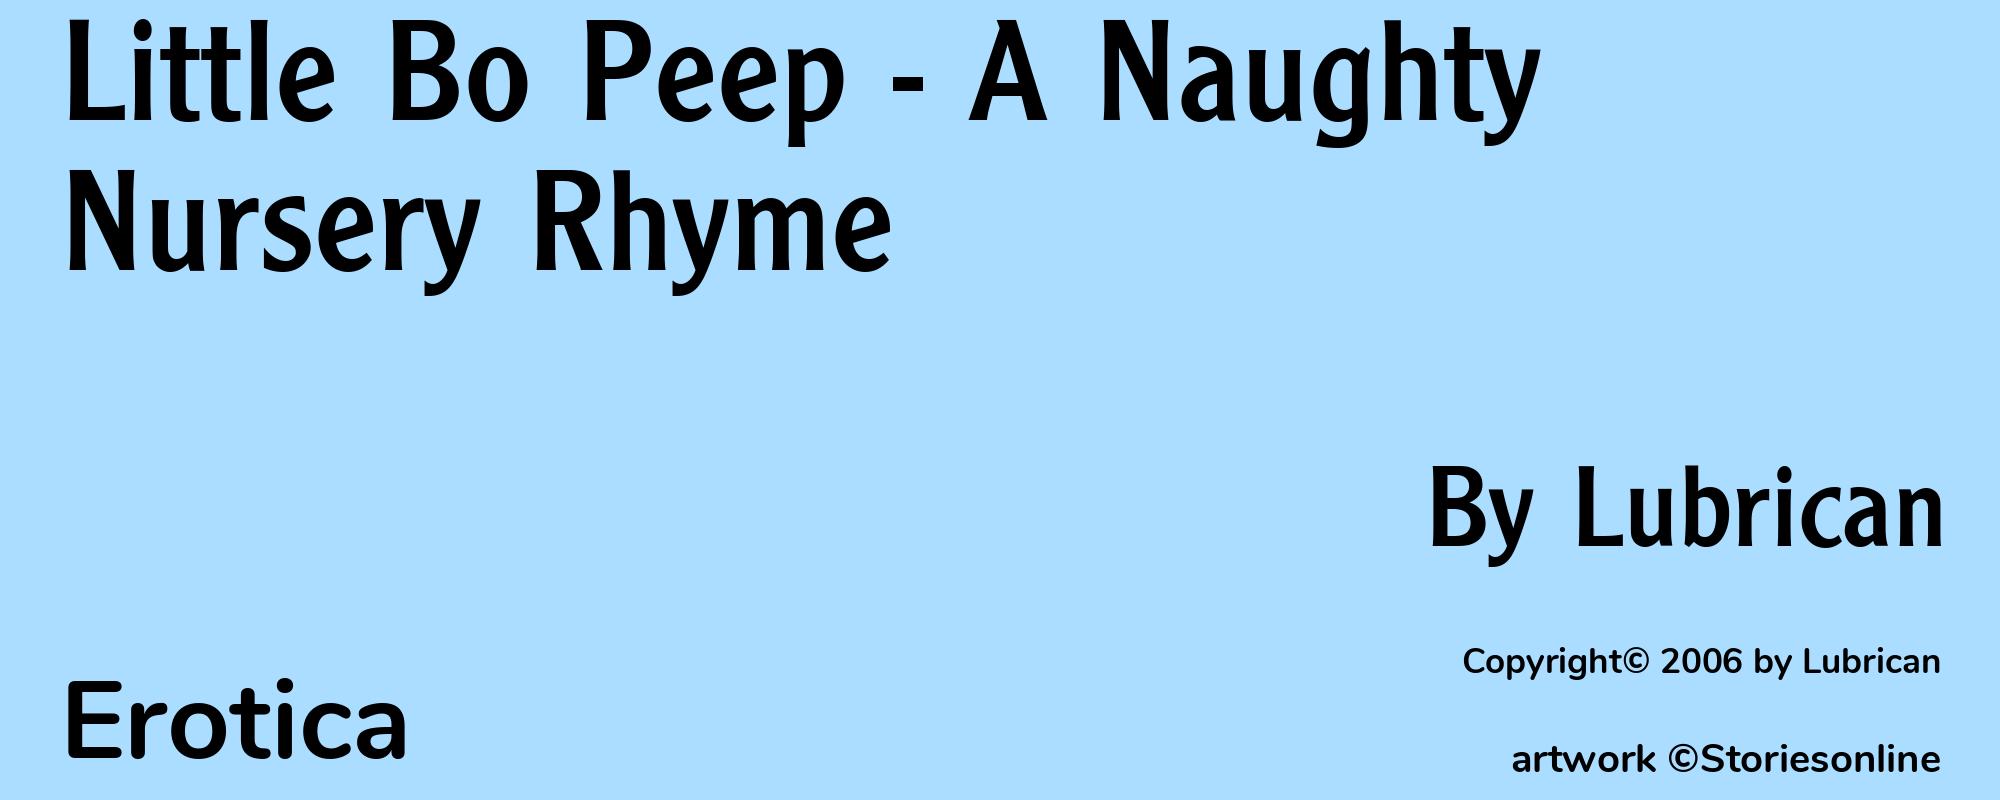 Little Bo Peep - A Naughty Nursery Rhyme - Cover